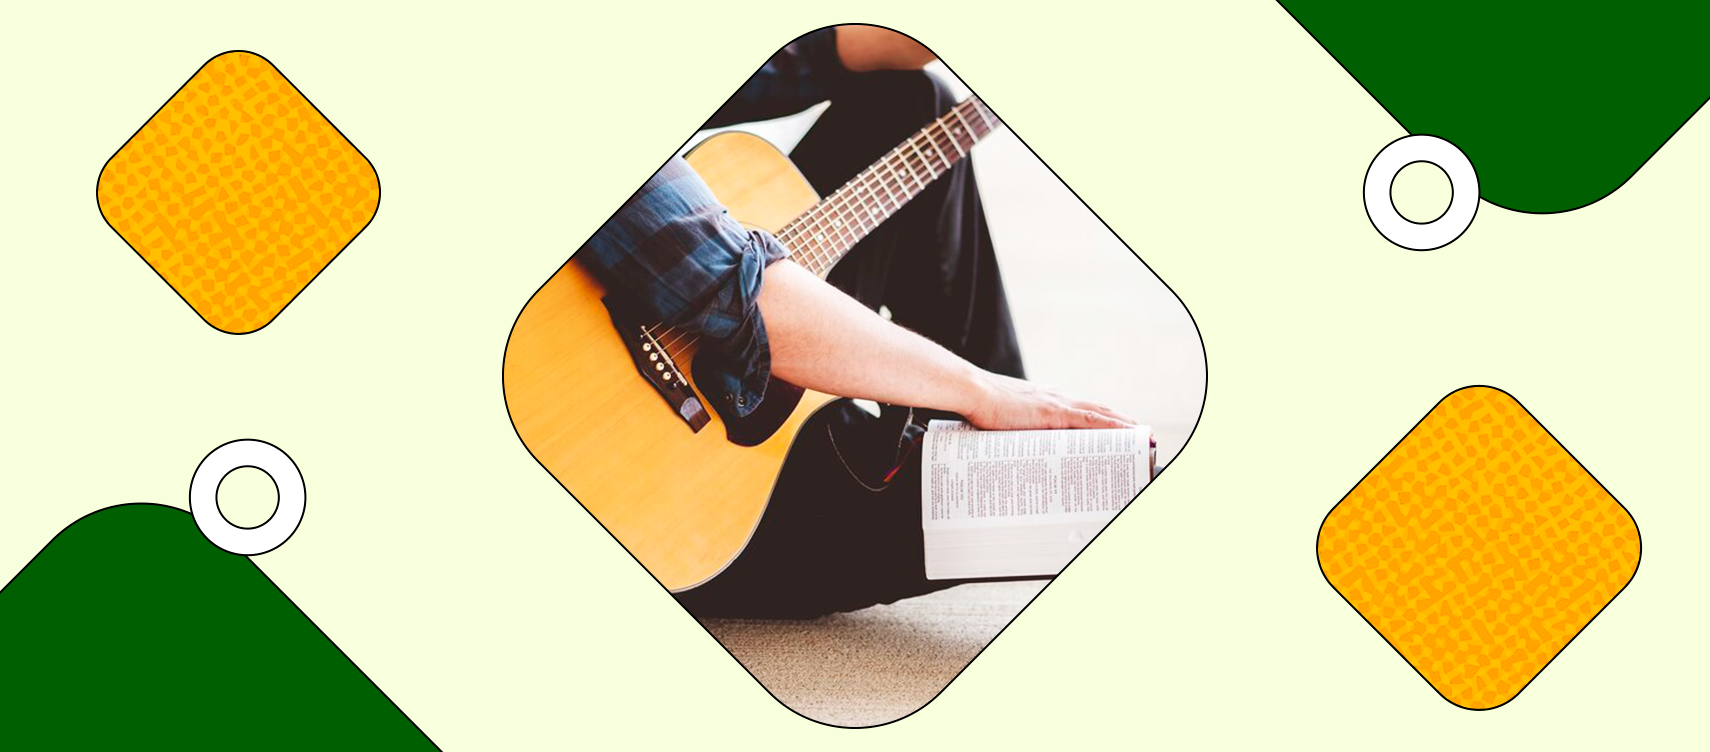 violao #aprendaviolão #guitar #cifra #music #musica #gospel